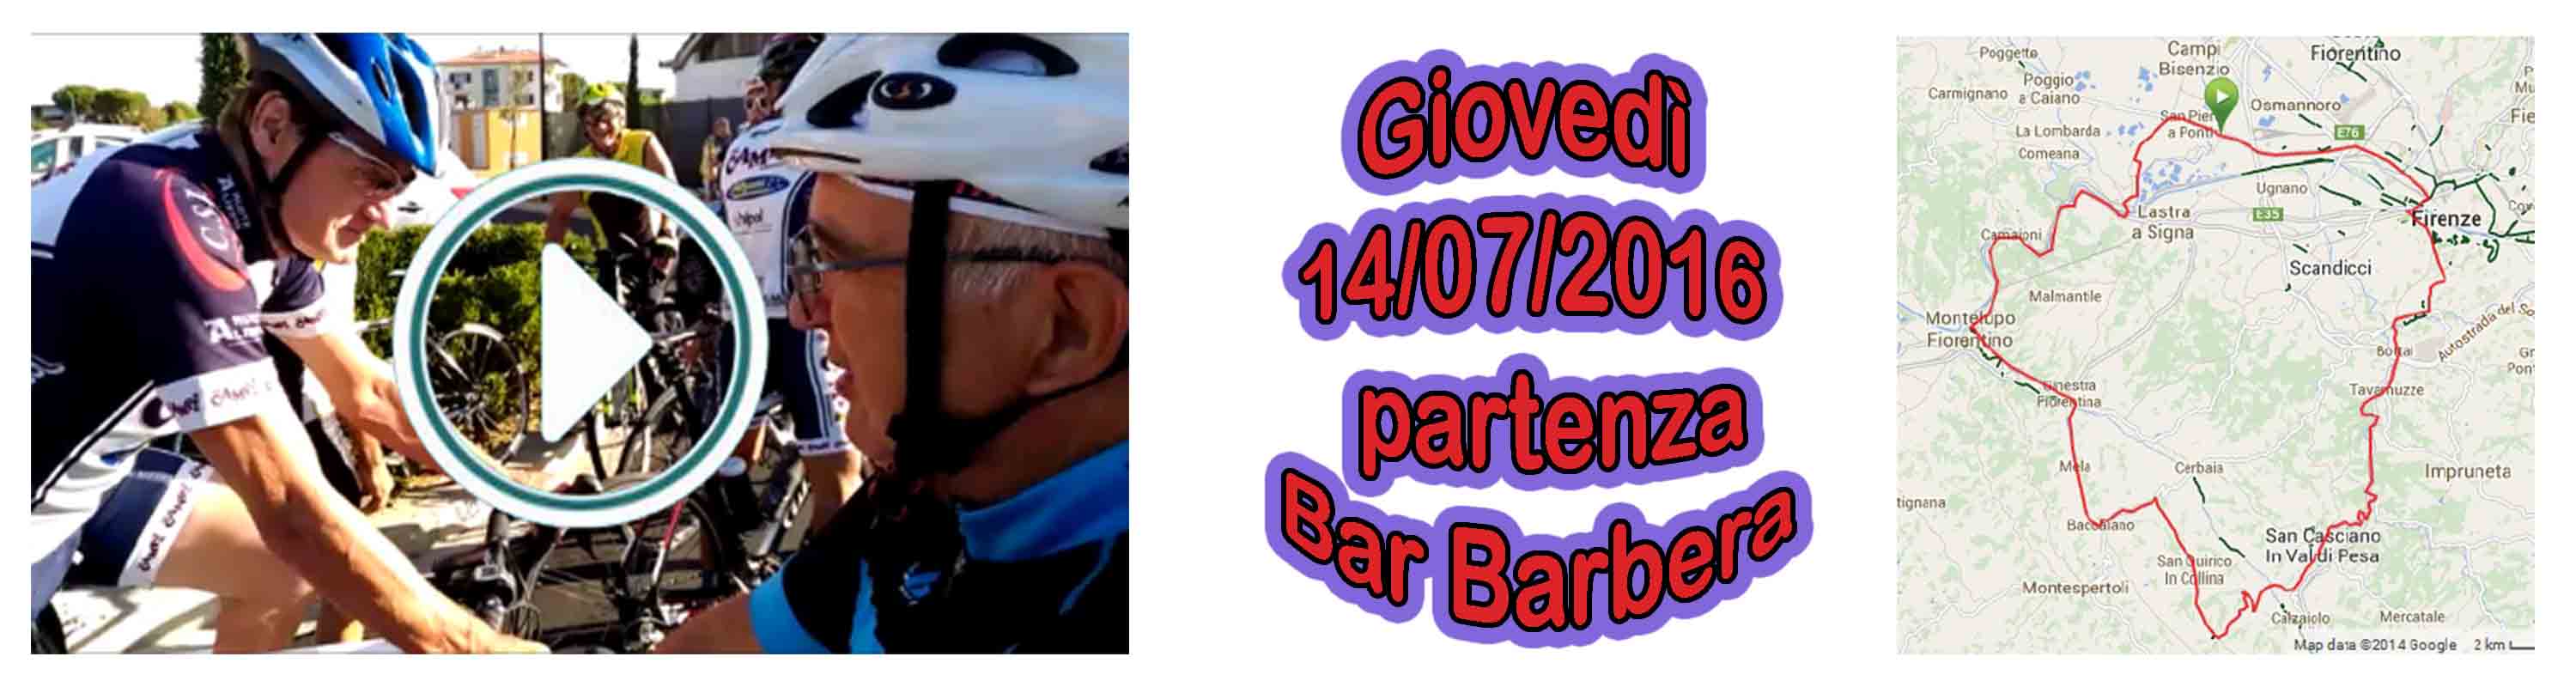 Banner Partenza dal Bar Barbera con video